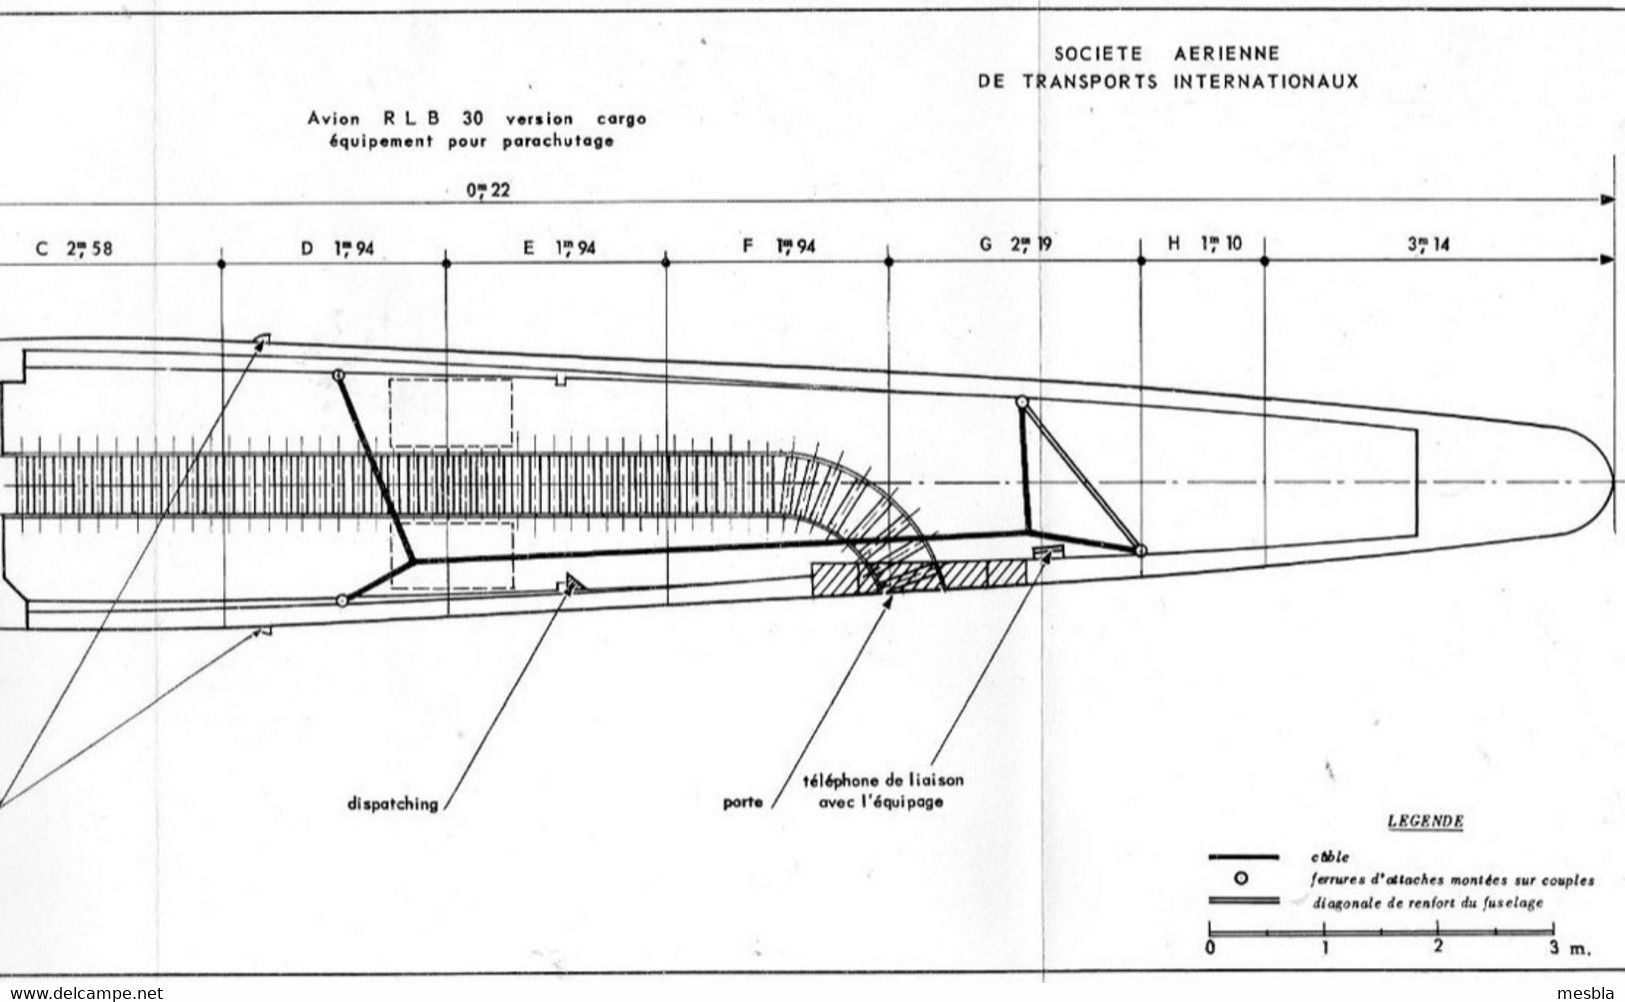 Expéditions Polaires Françaises Au Groenland  -  Missions Paul Emile Victor - Plan Avion R.L.B - 30 - Version Cargo - - Materiaal En Toebehoren